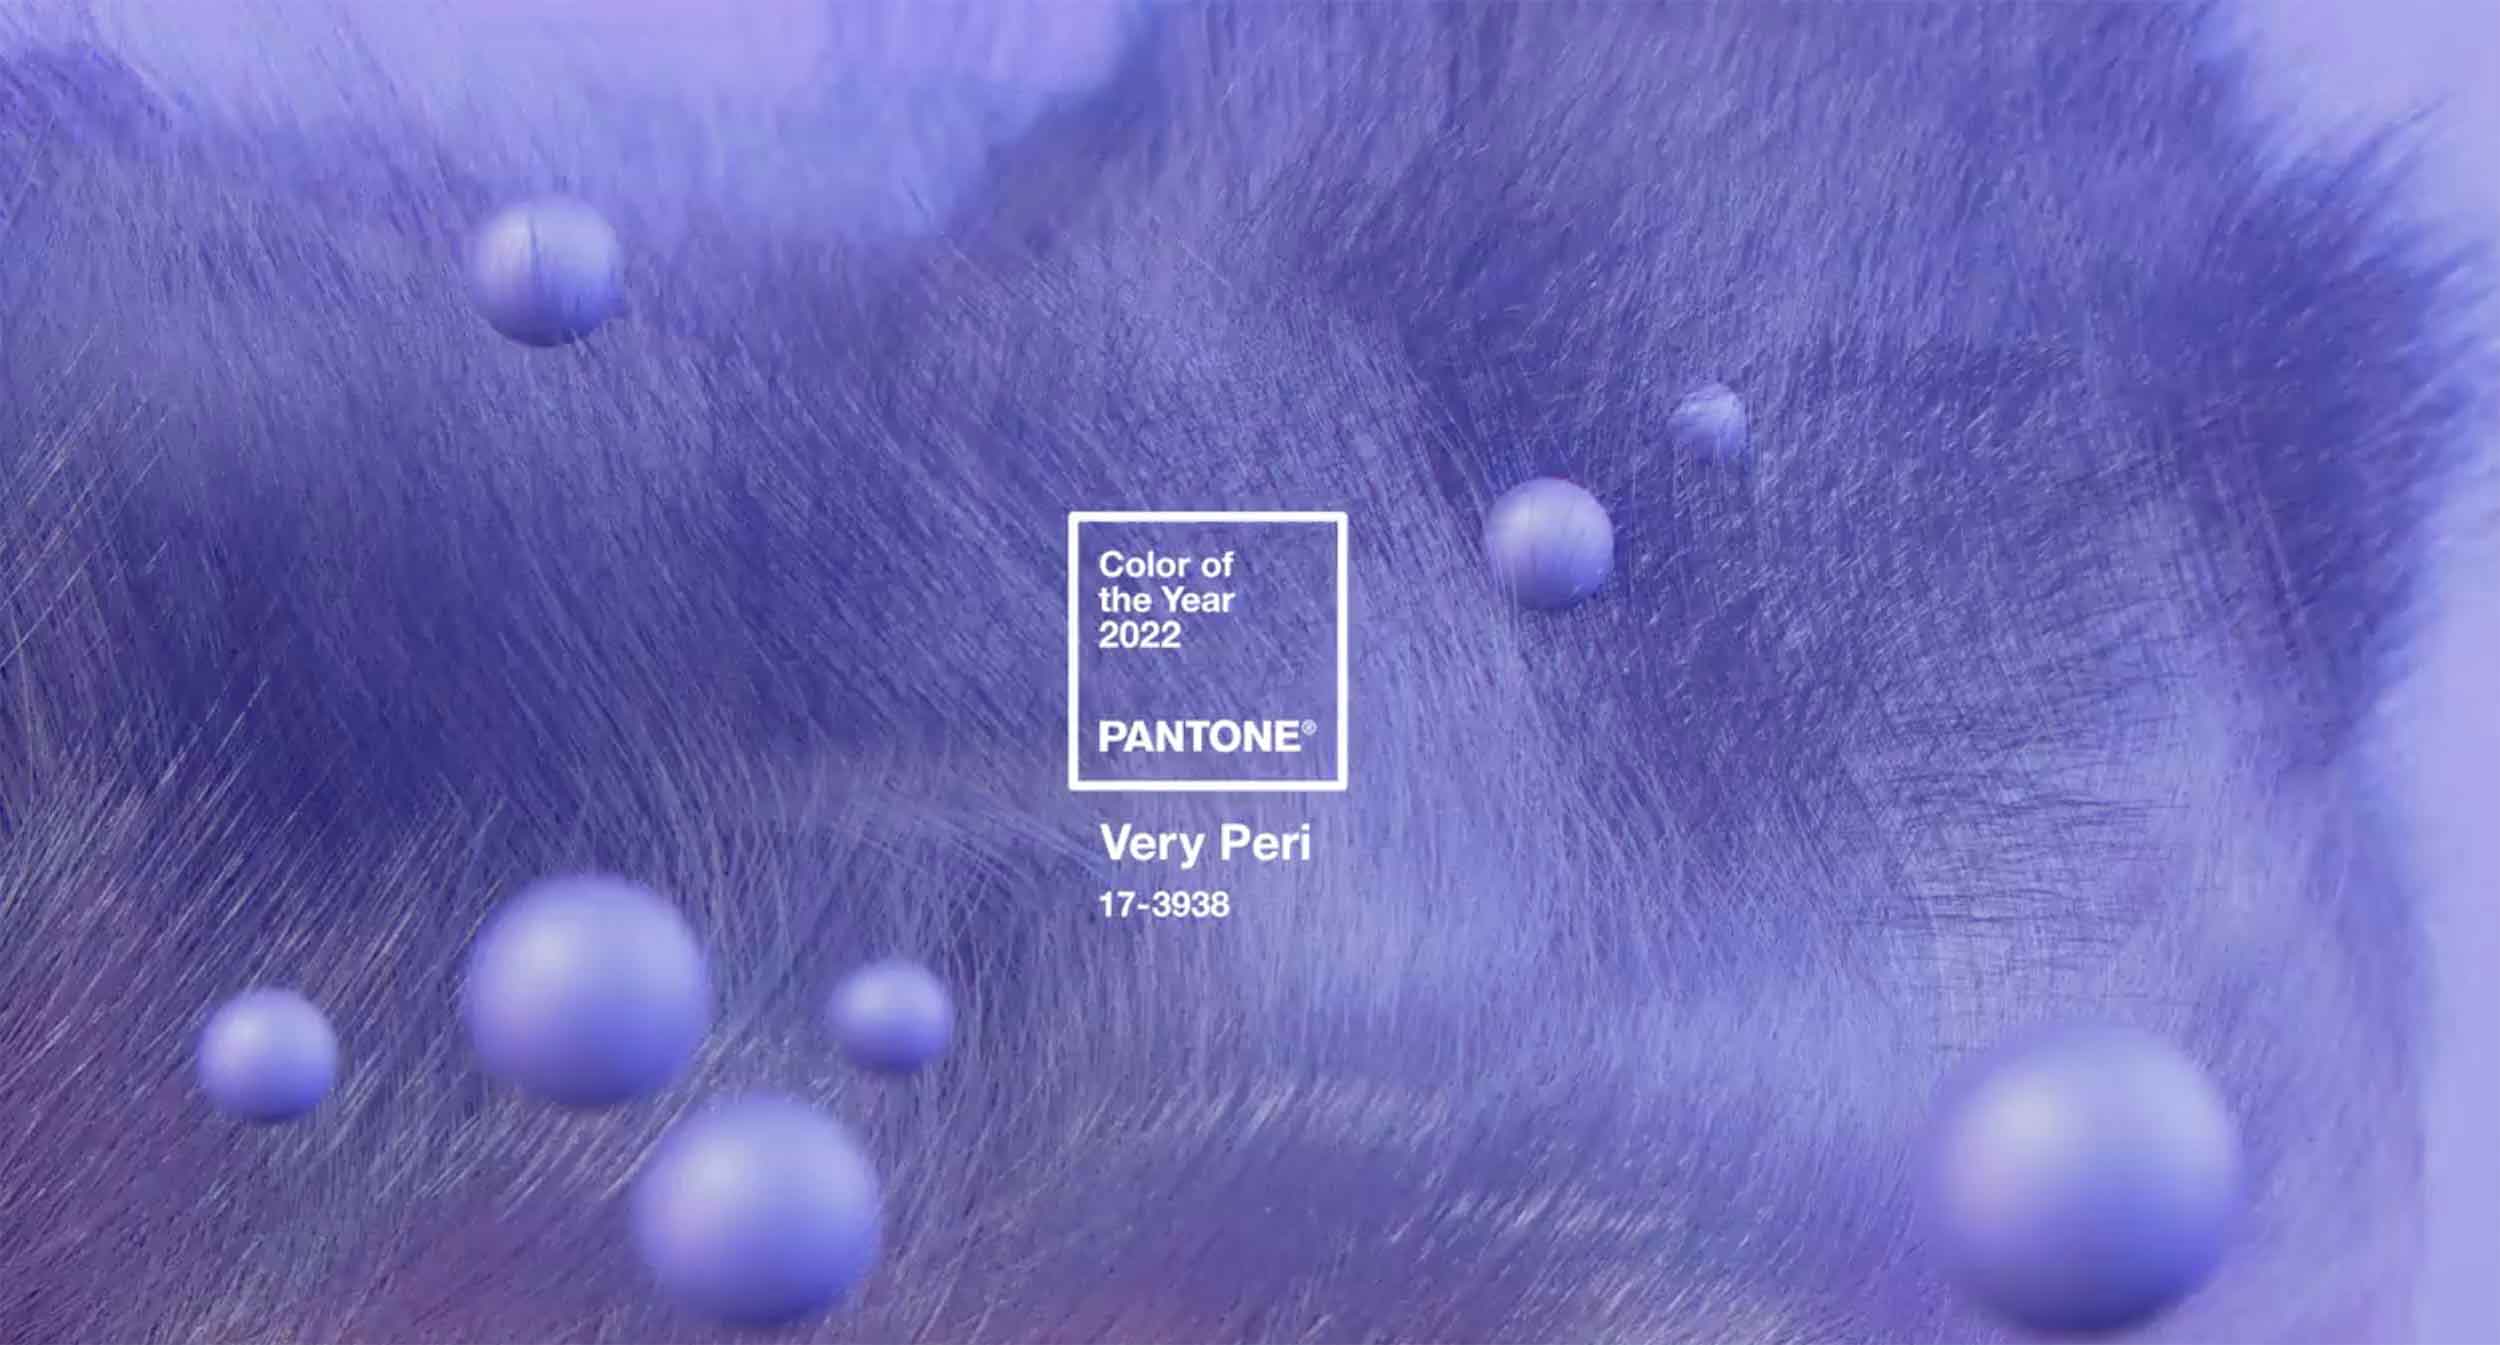 پنتون -Pantone- وری پری - veri peri - رنگ سال چیست